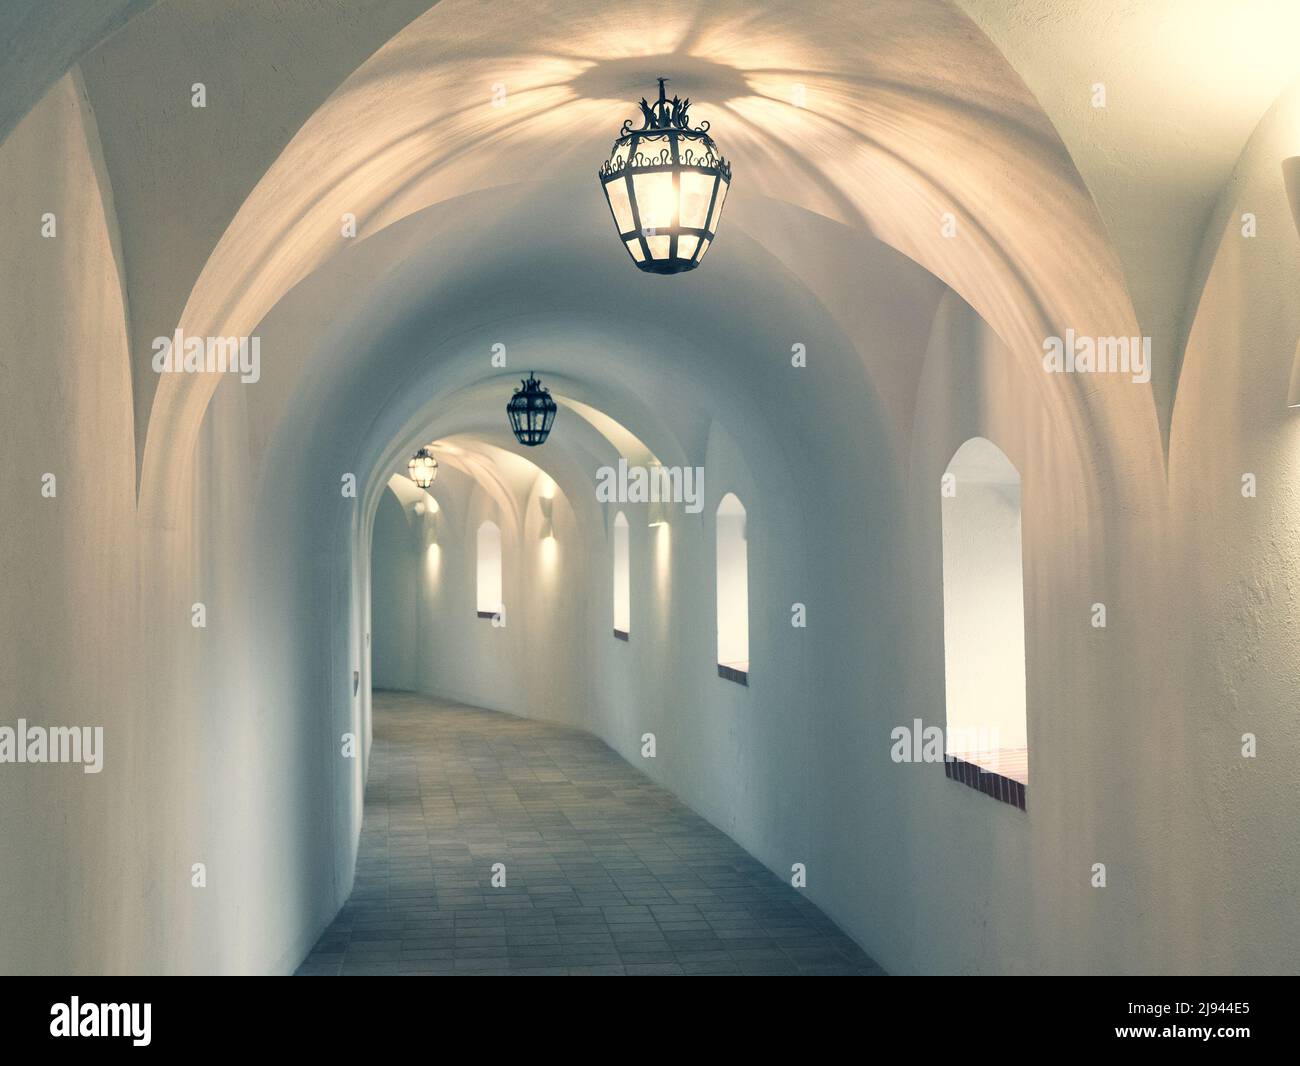 Corridoio del castello illuminato con illuminazione dall'alto. Interno di un lungo corridoio con pareti bianche e archi, fuoco selettivo Foto Stock